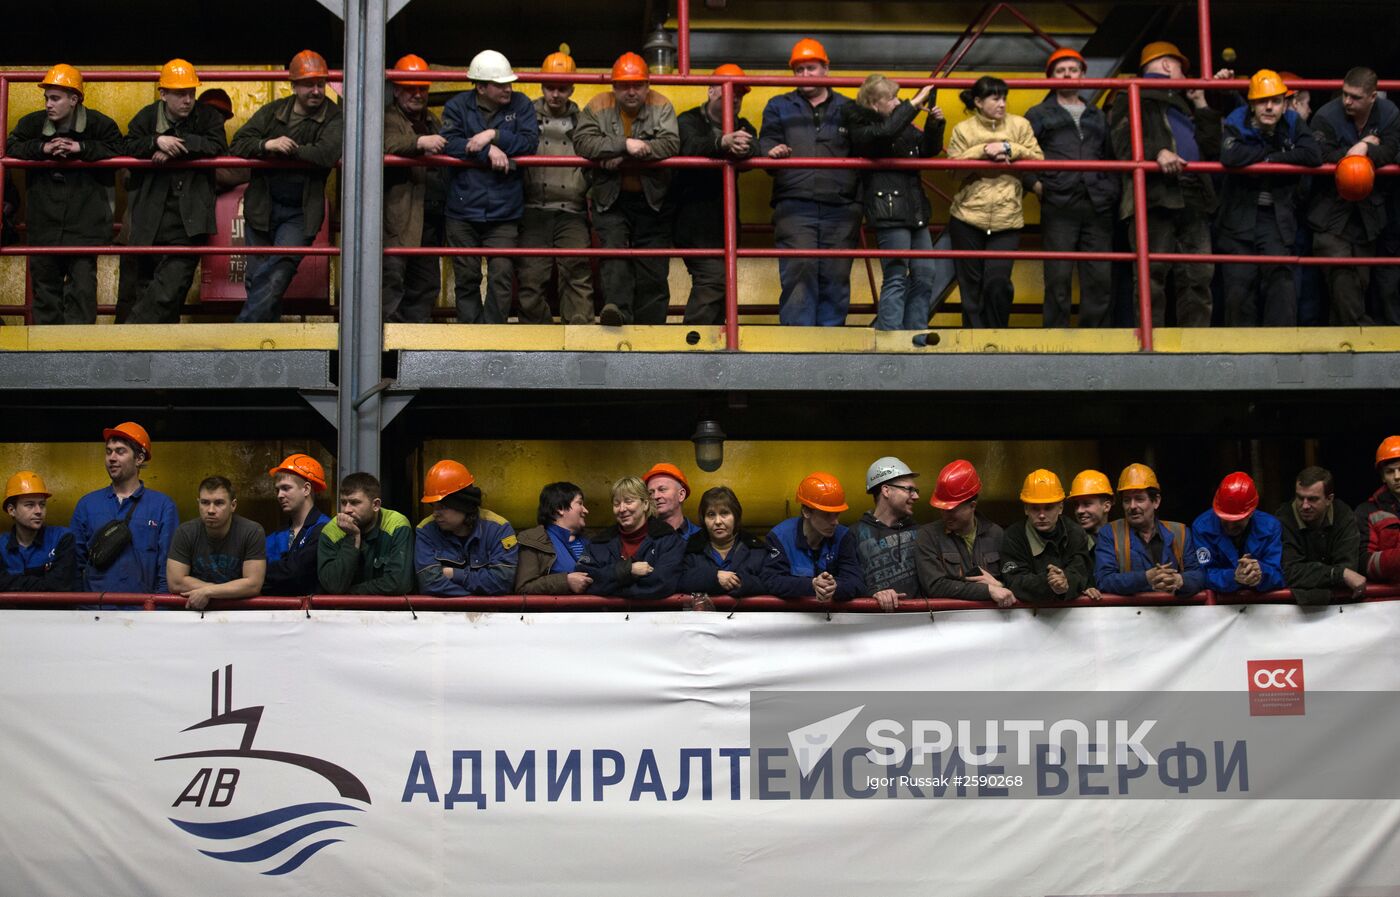 Assembly begins of diesel-electric submarine "Velikiye Luki" in St. Petersburg